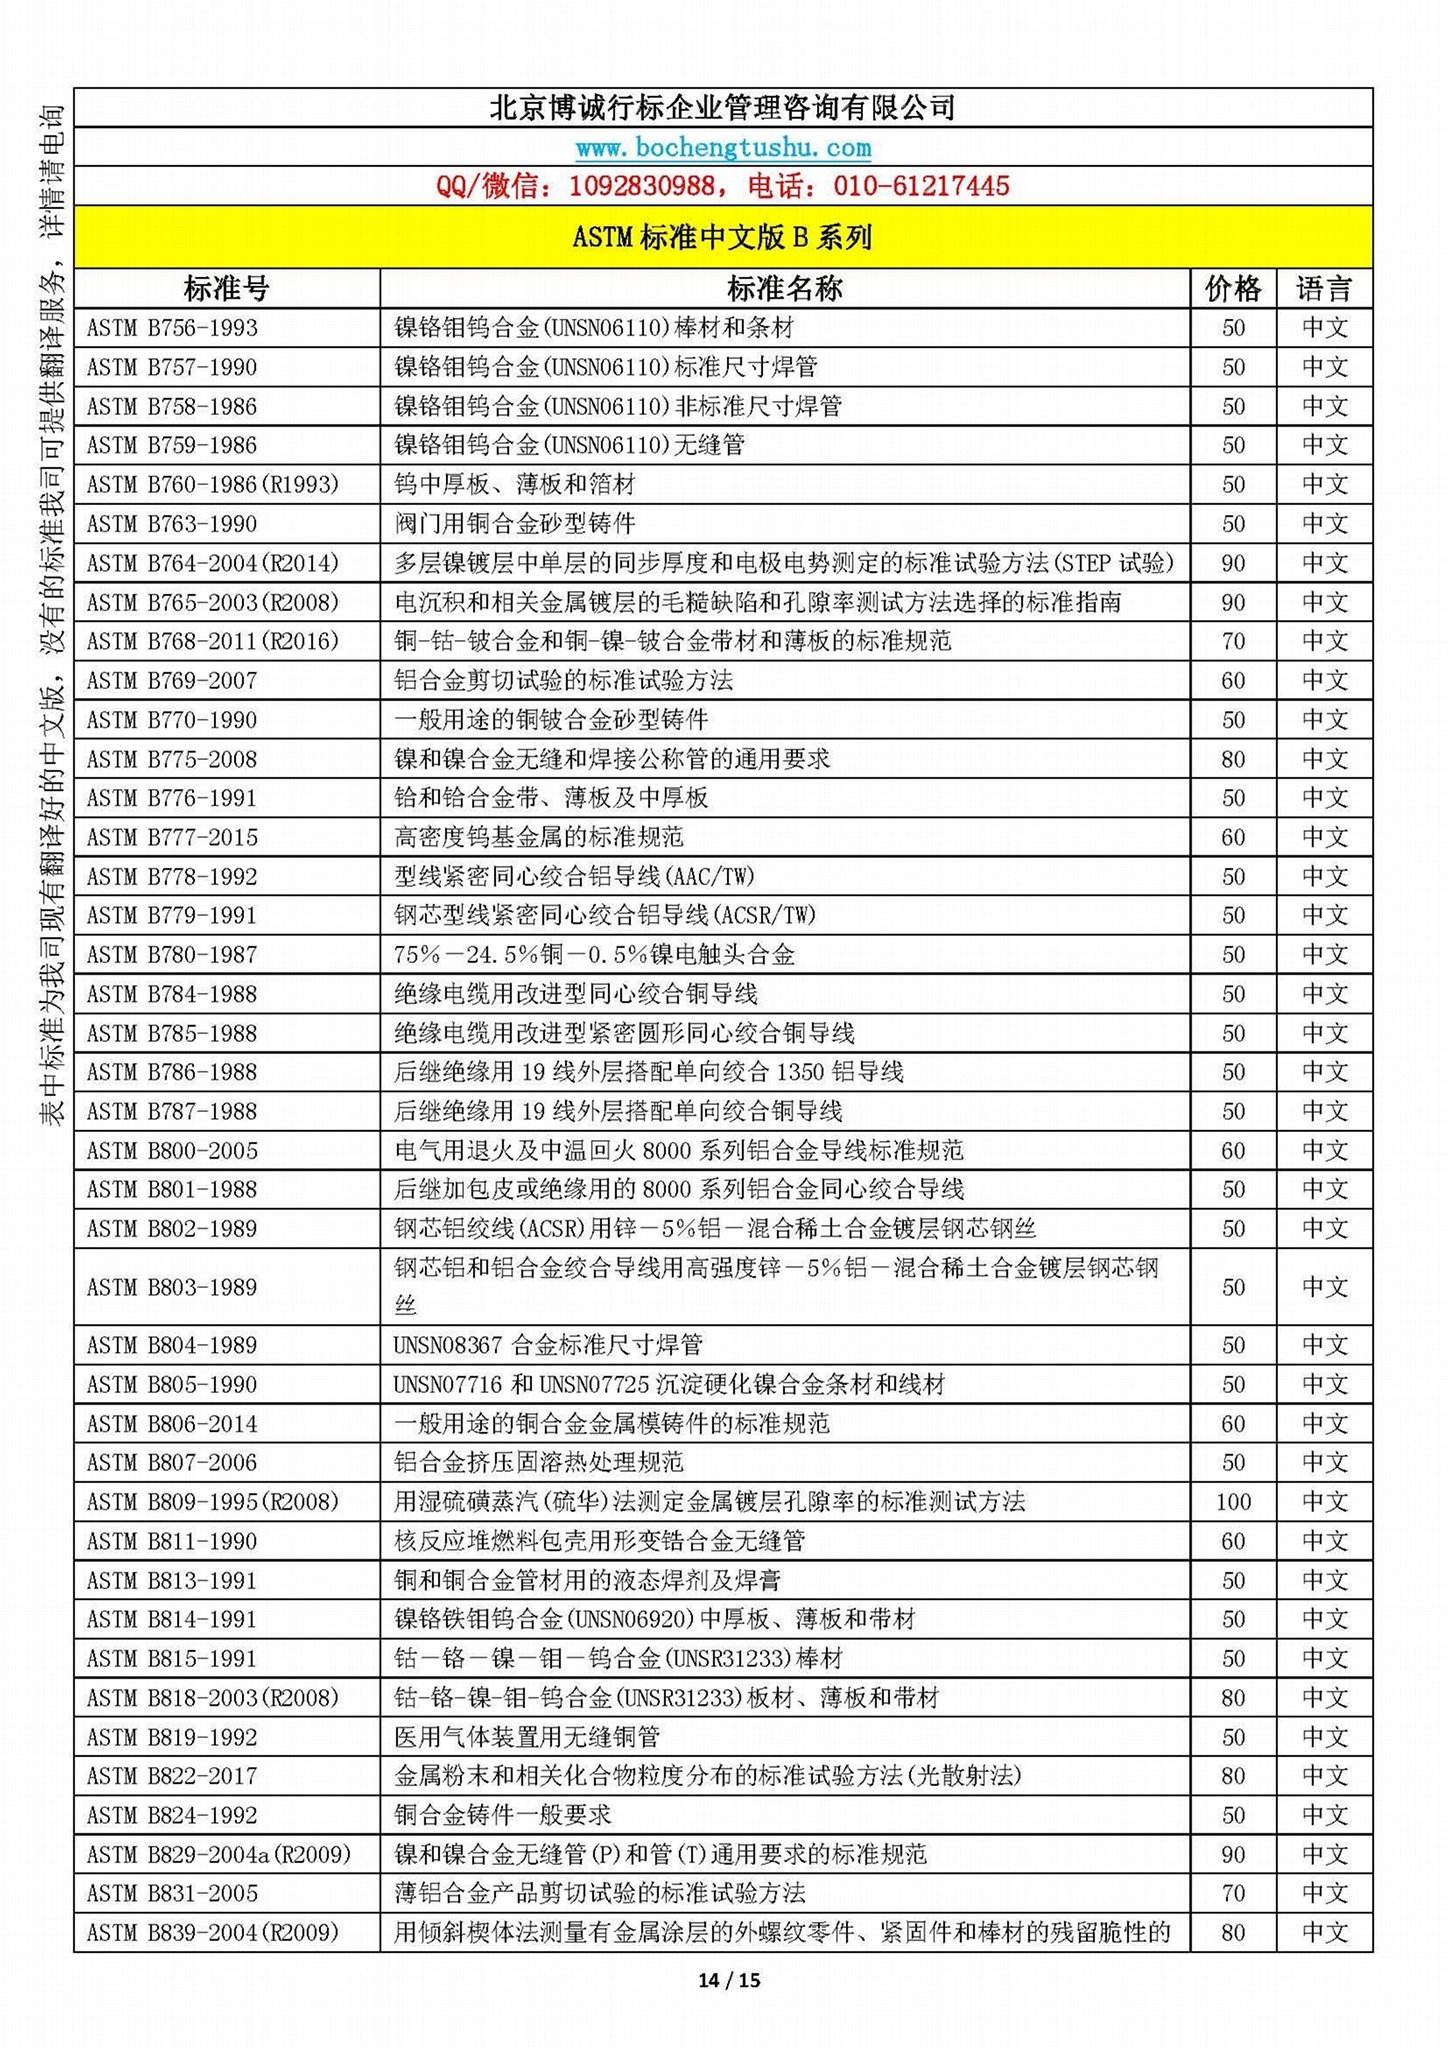 ASTM標準中文版B系列資料 2